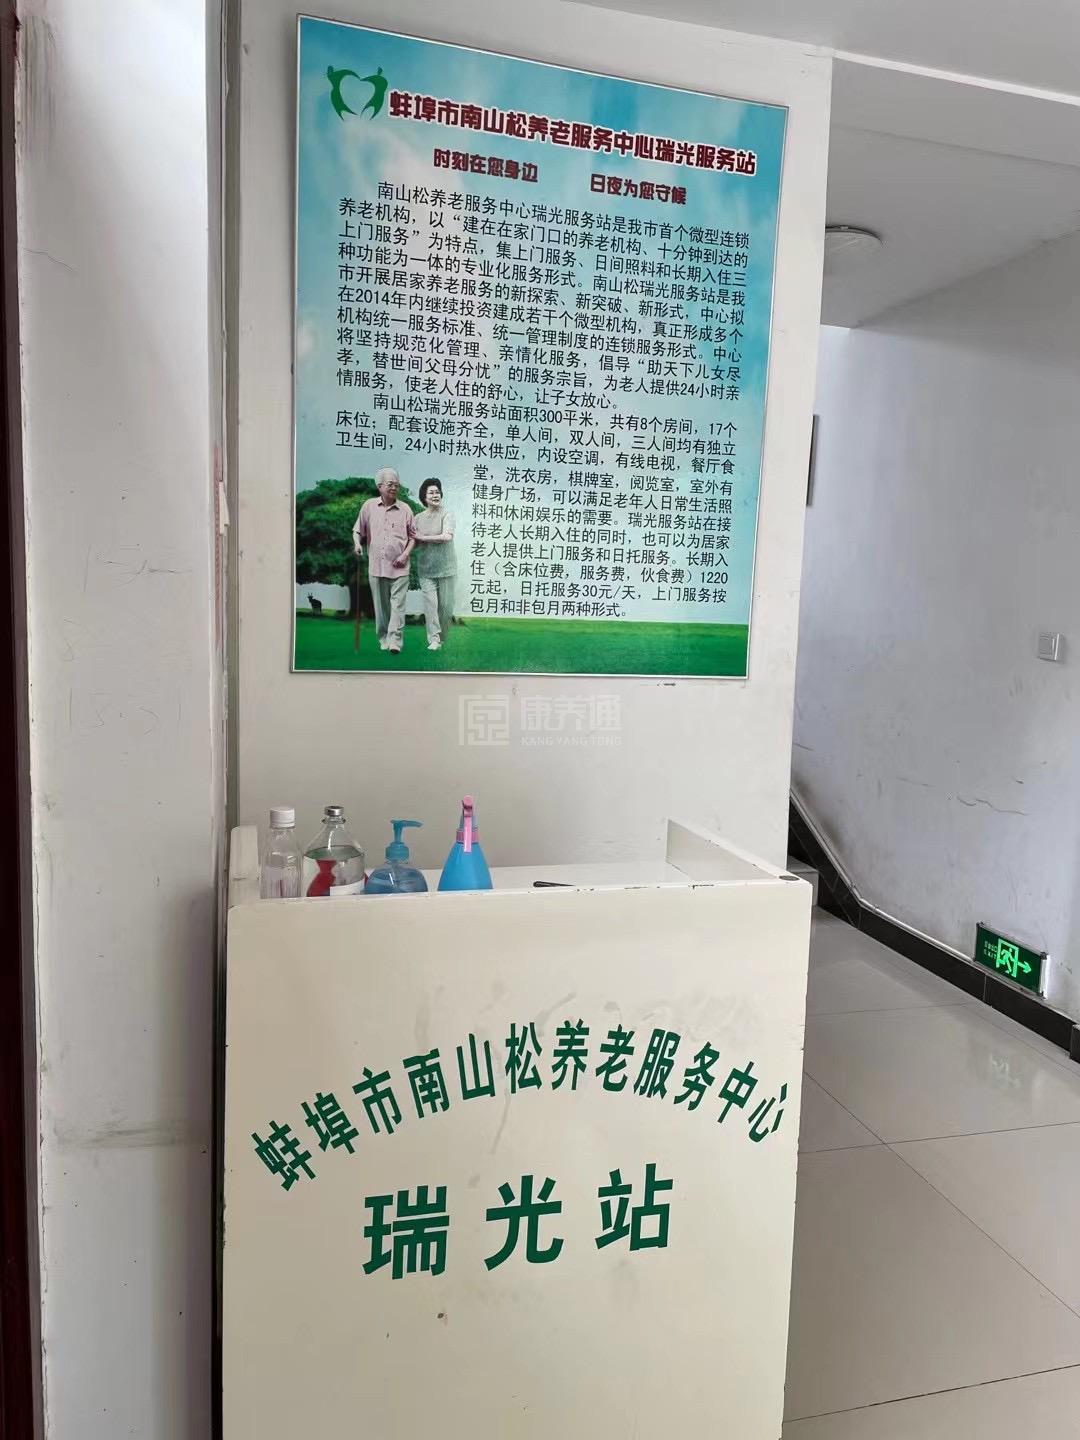 蚌埠市蚌山区南山松瑞光养护院服务项目图3惬意的环境、感受岁月静好